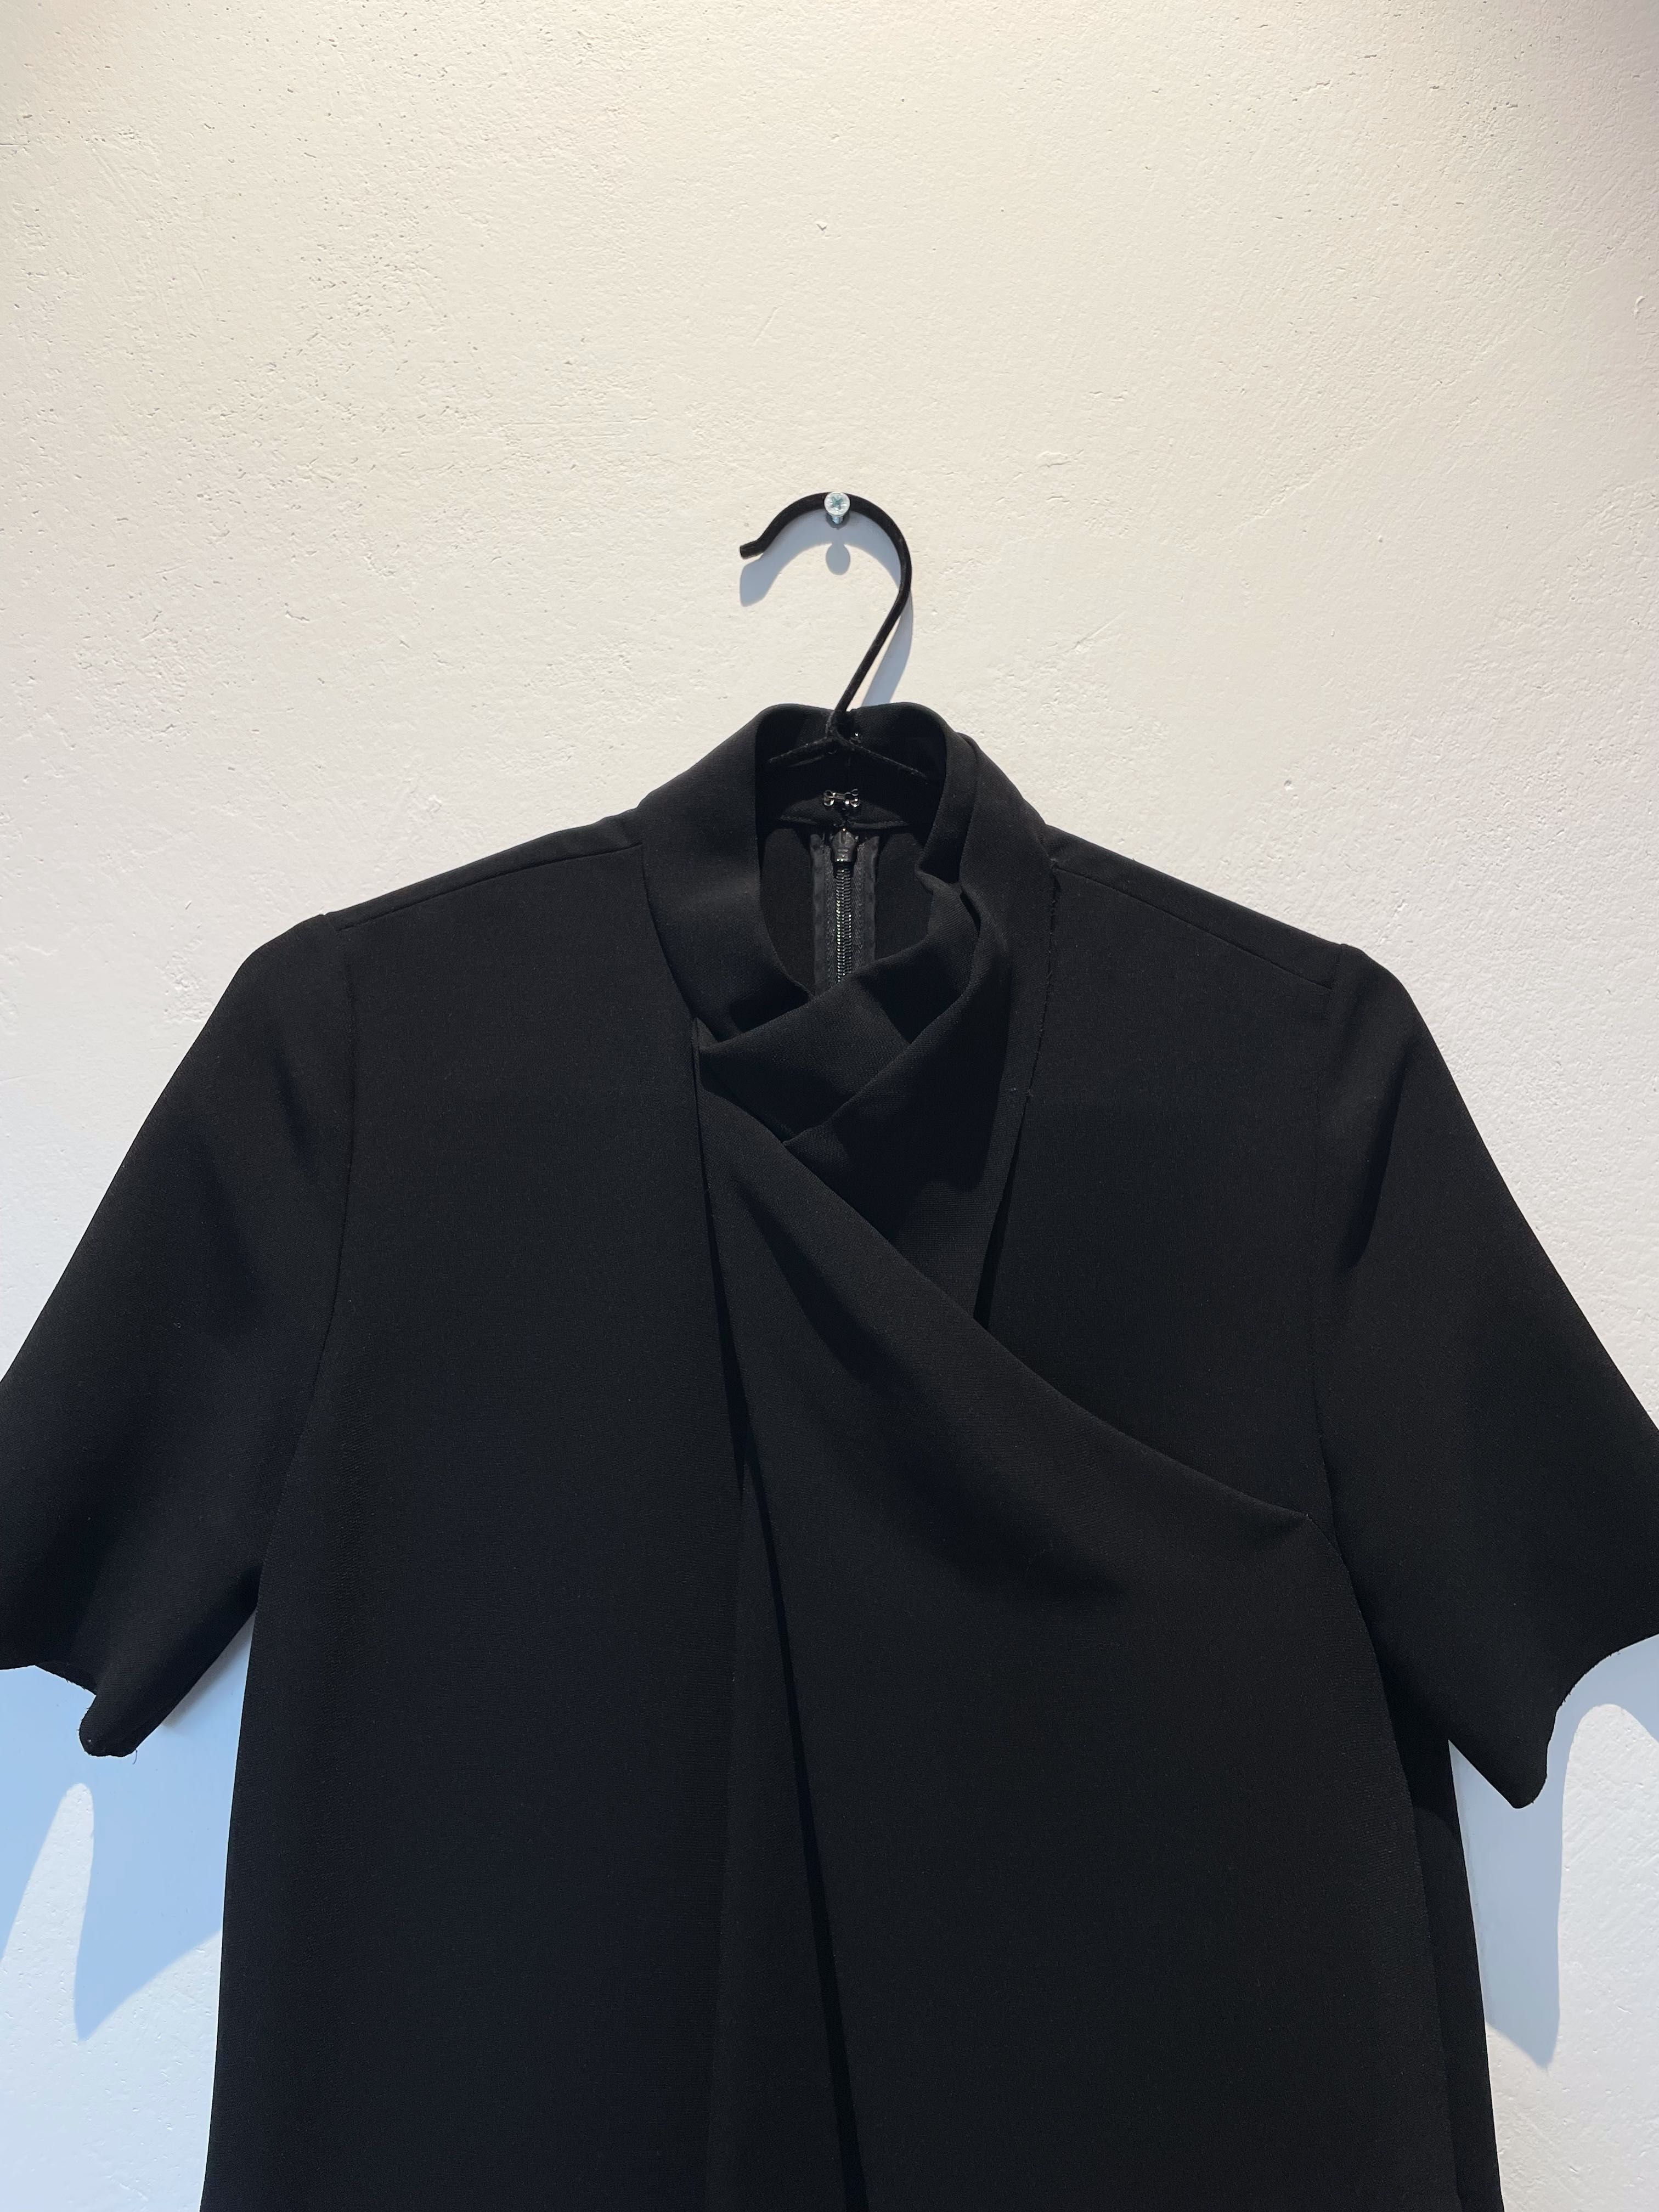 Малка черна рокля COS, EU34